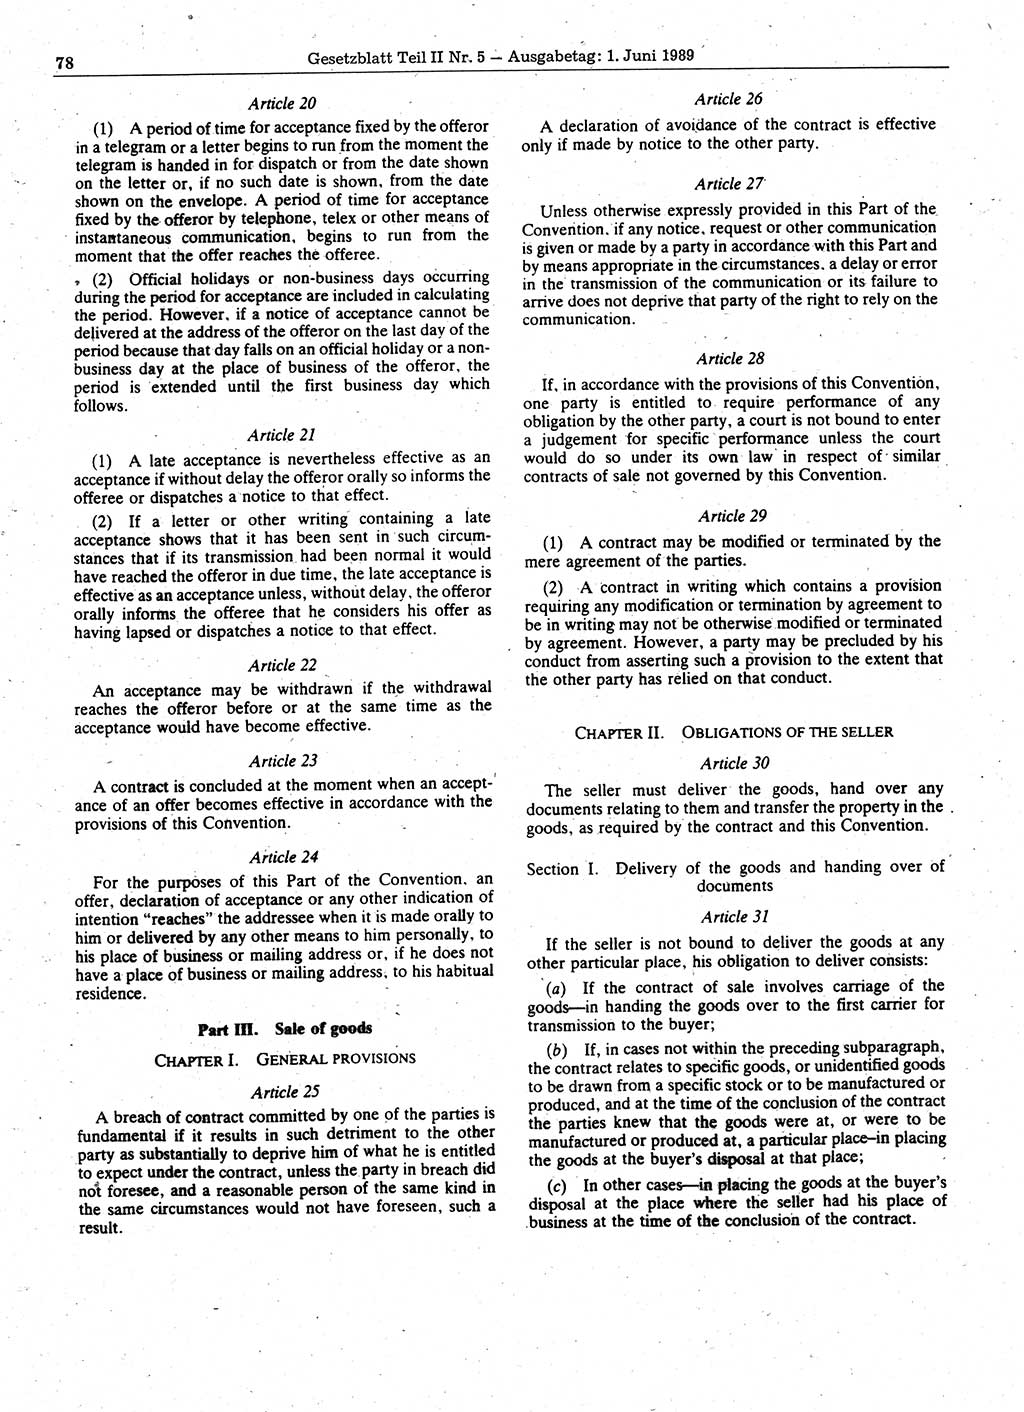 Gesetzblatt (GBl.) der Deutschen Demokratischen Republik (DDR) Teil ⅠⅠ 1989, Seite 78 (GBl. DDR ⅠⅠ 1989, S. 78)